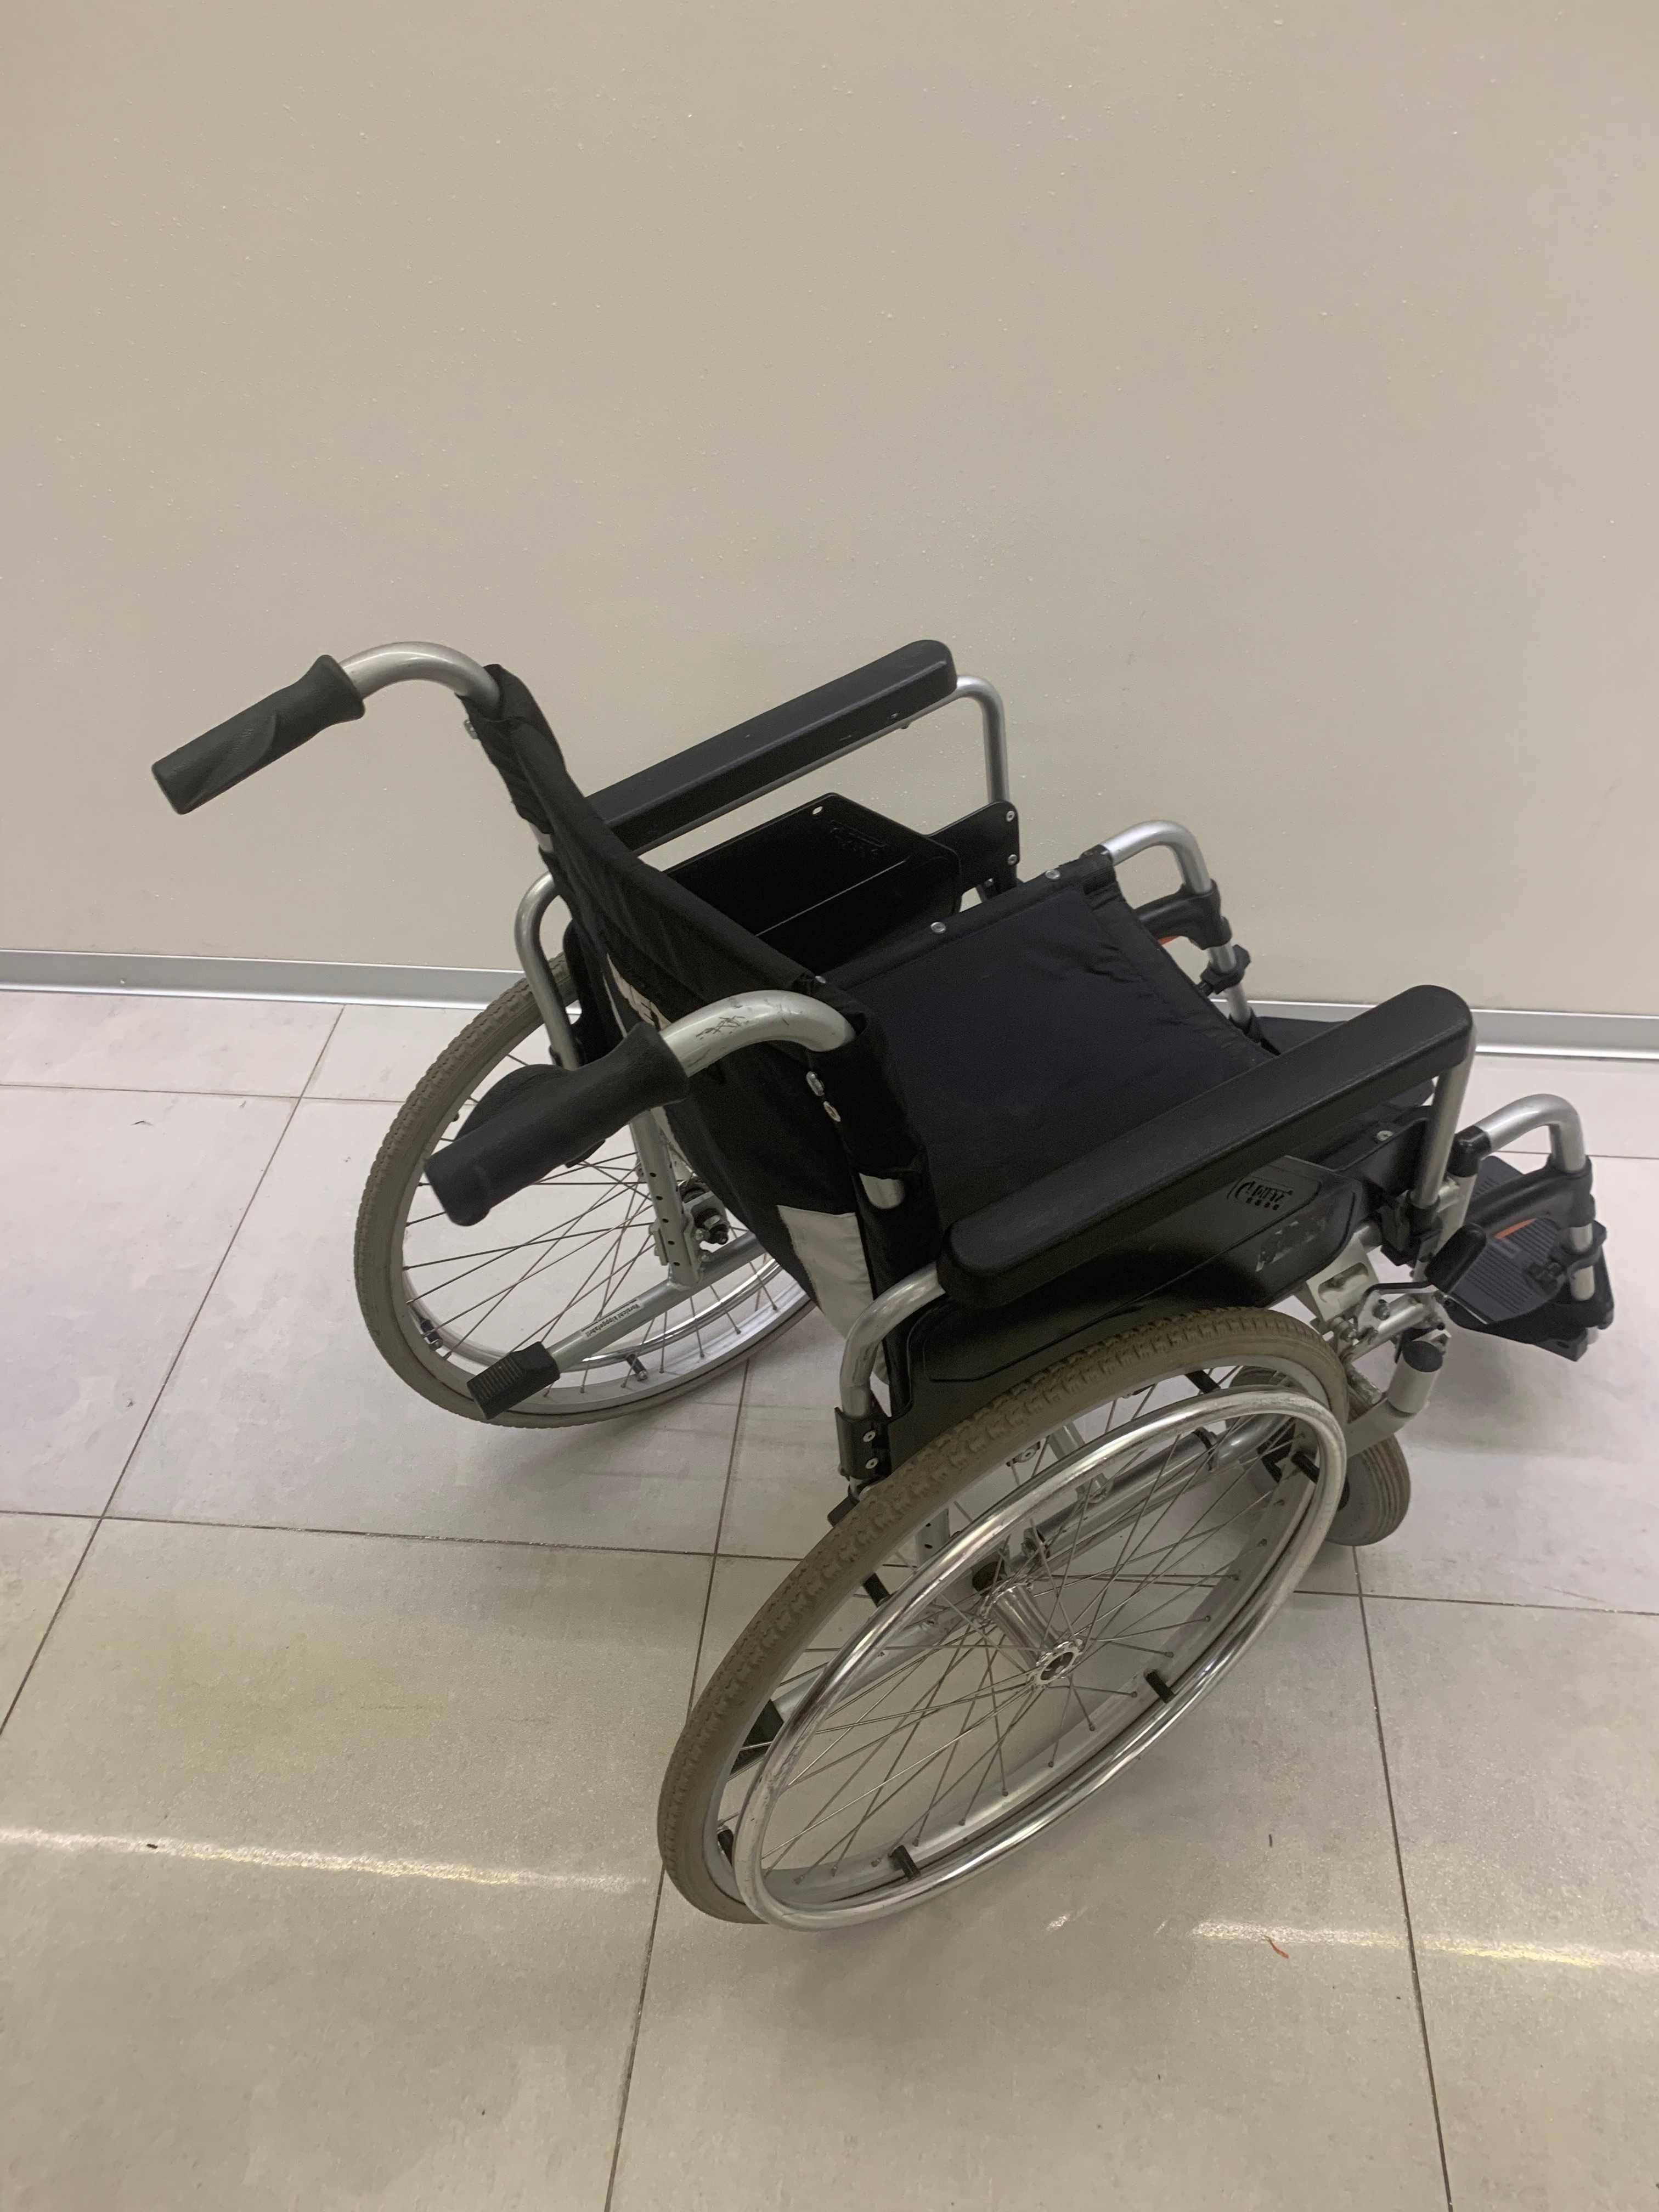 Dietz niemiecki lekki składany wózek inwalidzki